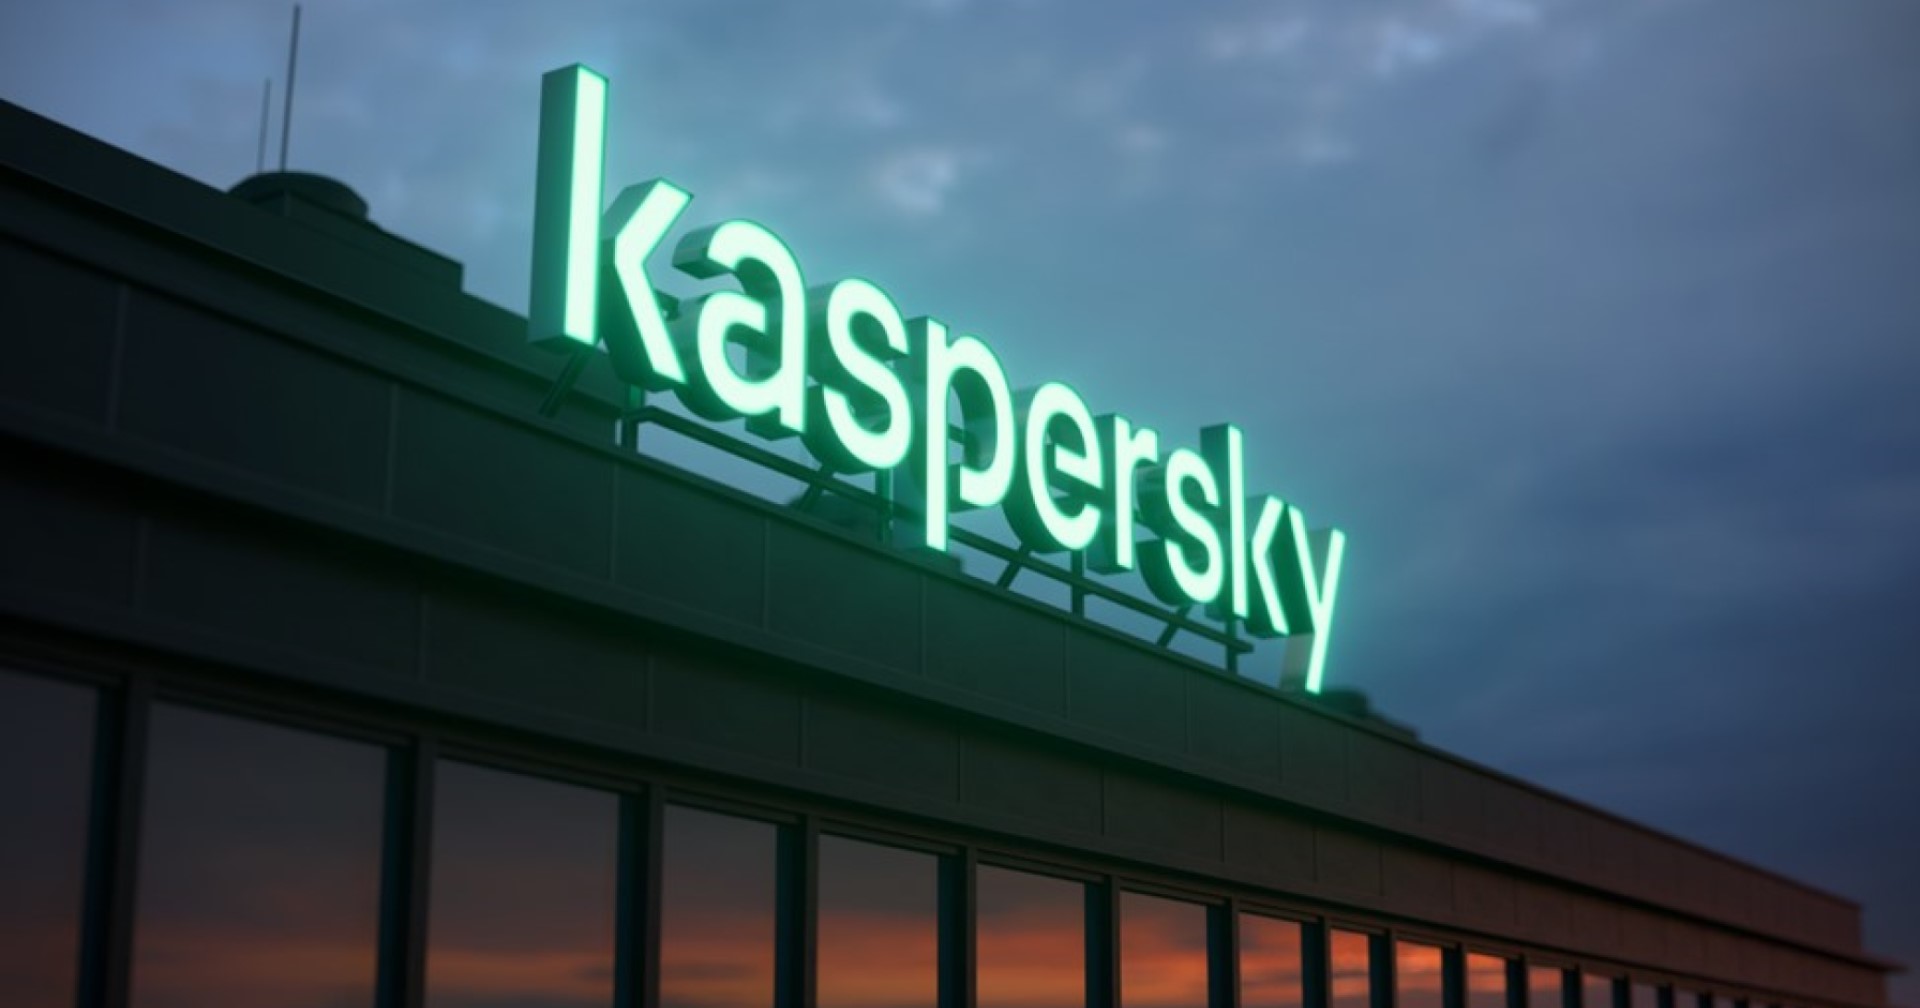 Kaspersky พบอาชญากรไซเบอร์ประกาศรับสมัครงานใต้ดินจำนวนมาก